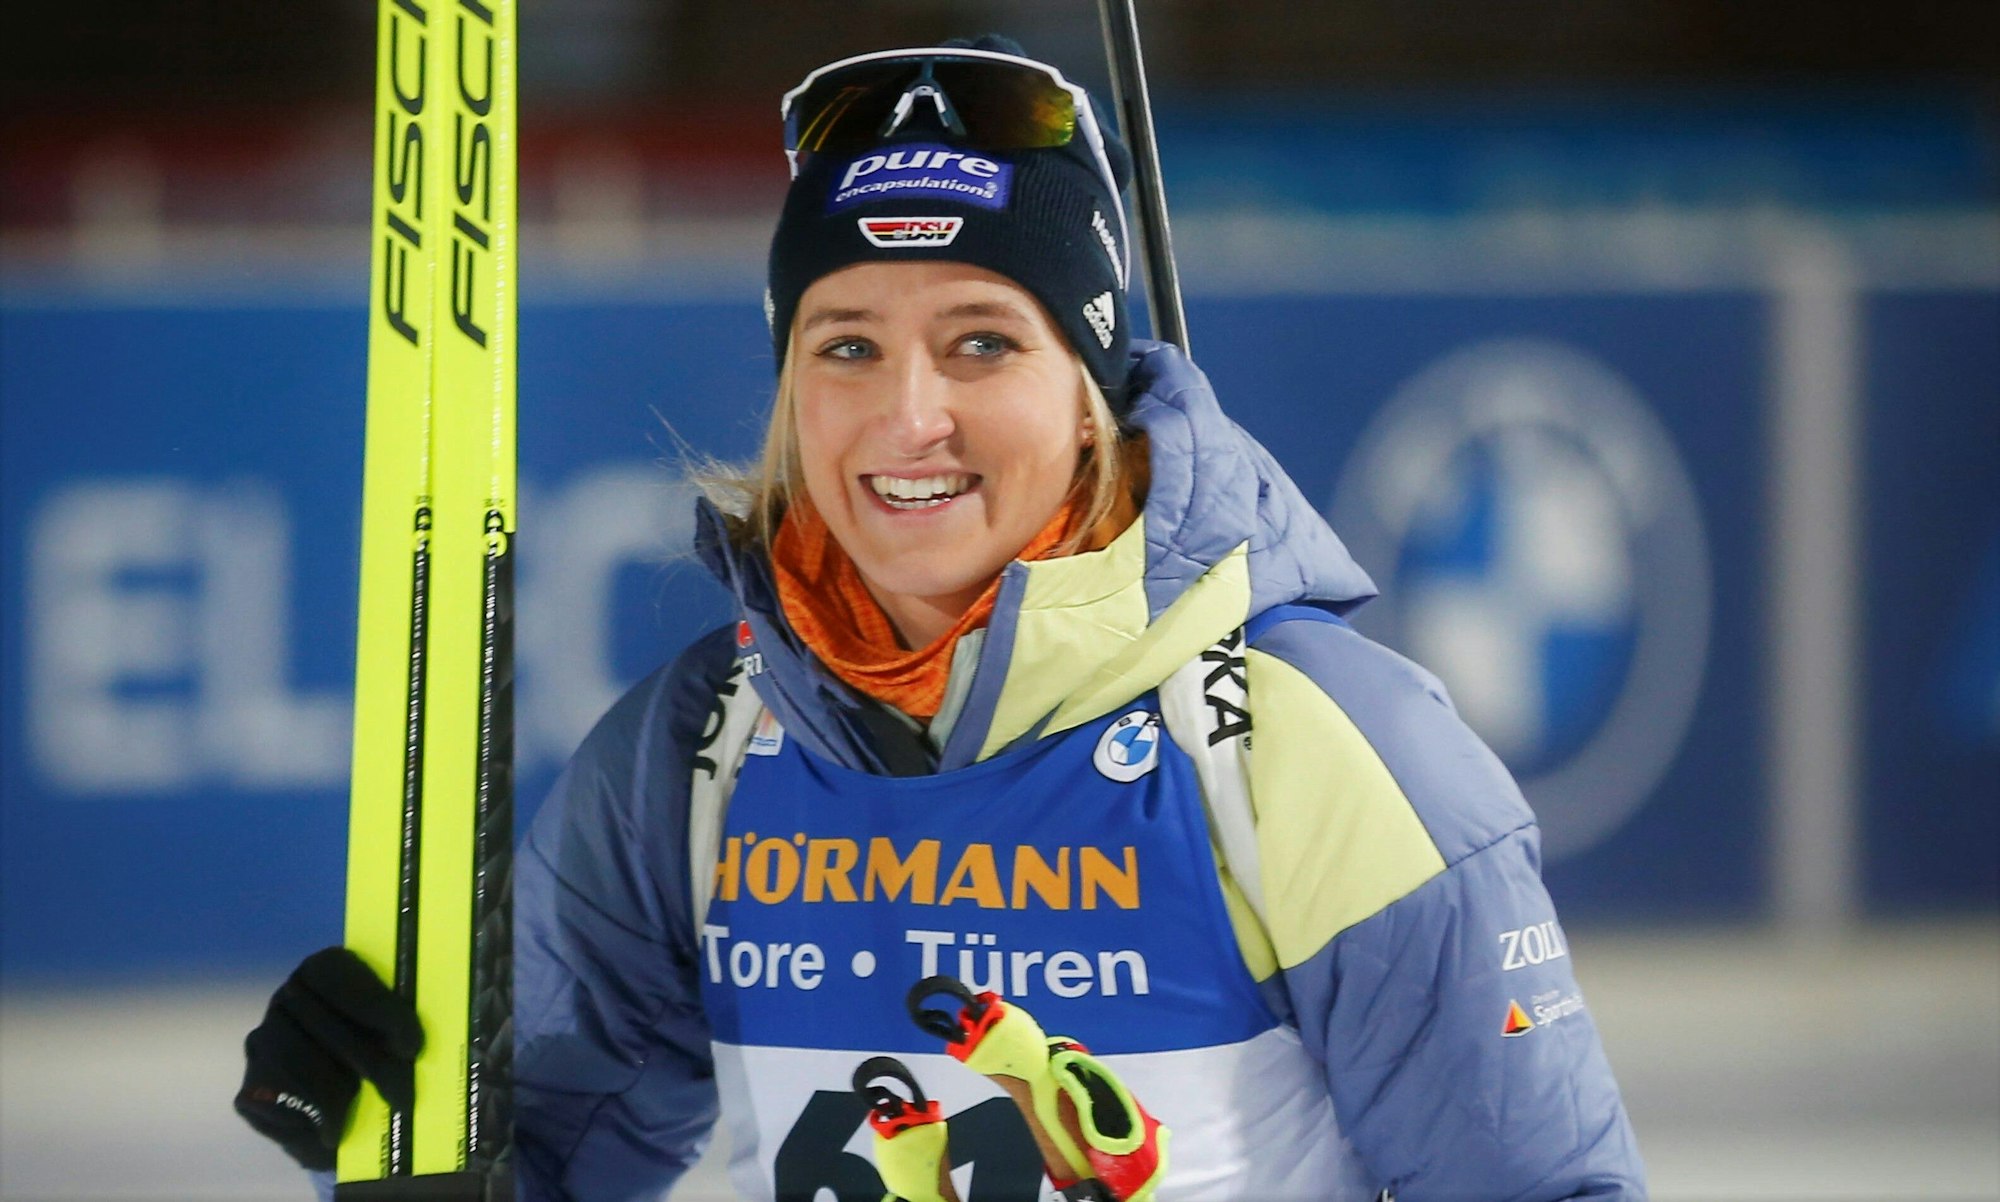 Anna Weidel lacht nach ihrem Auftritt beim Biathlon-Weltcup in Kontiolahti.